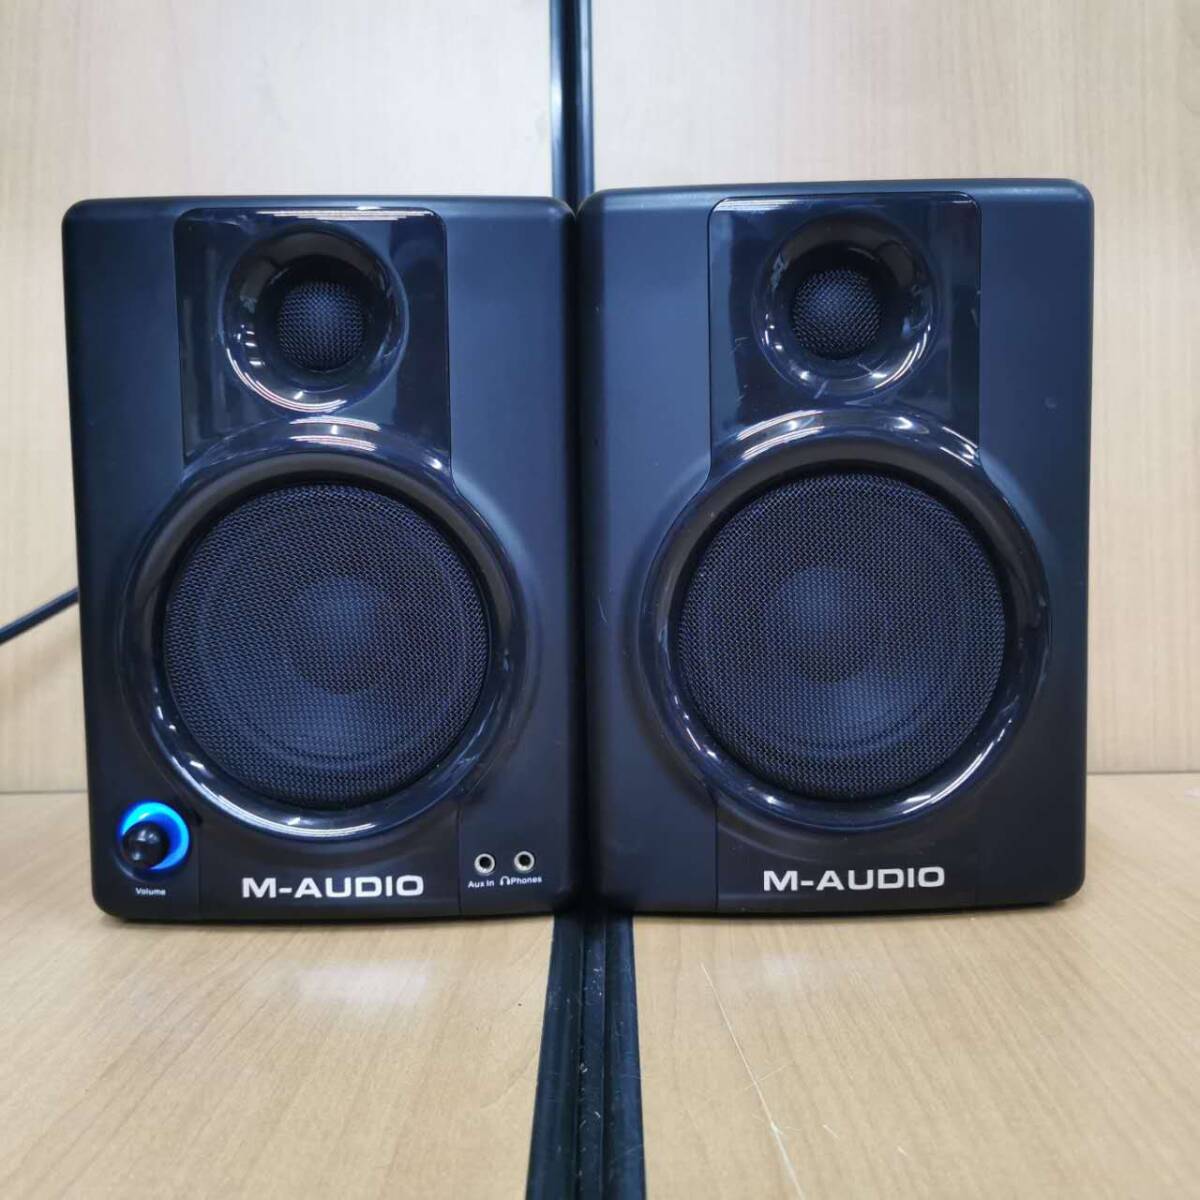 M-AUDIO AV40 monitor speaker 2 pcs. set black electrification has confirmed 